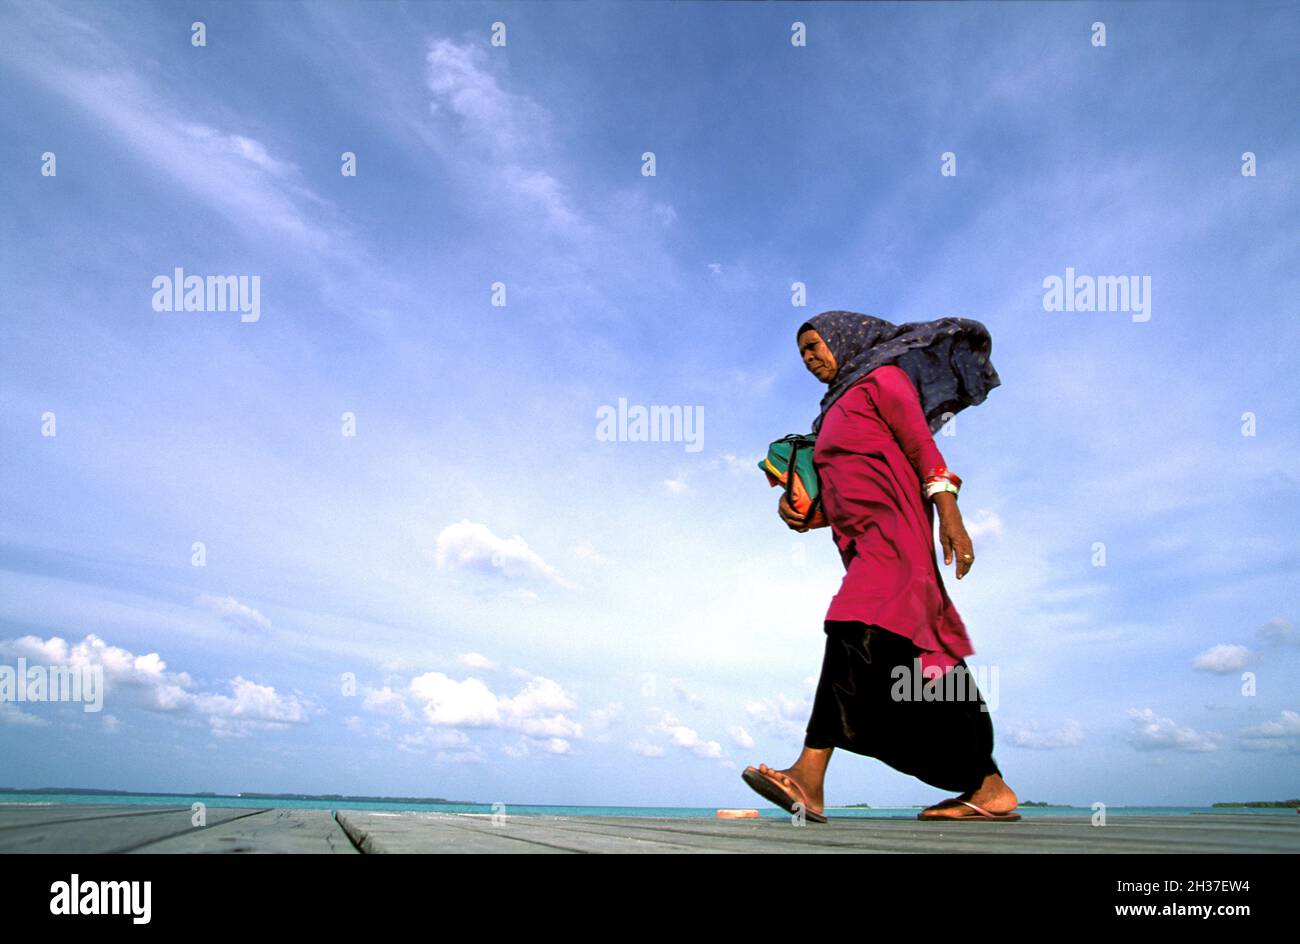 MALDIVES, MEEMU ATOLL Stock Photo